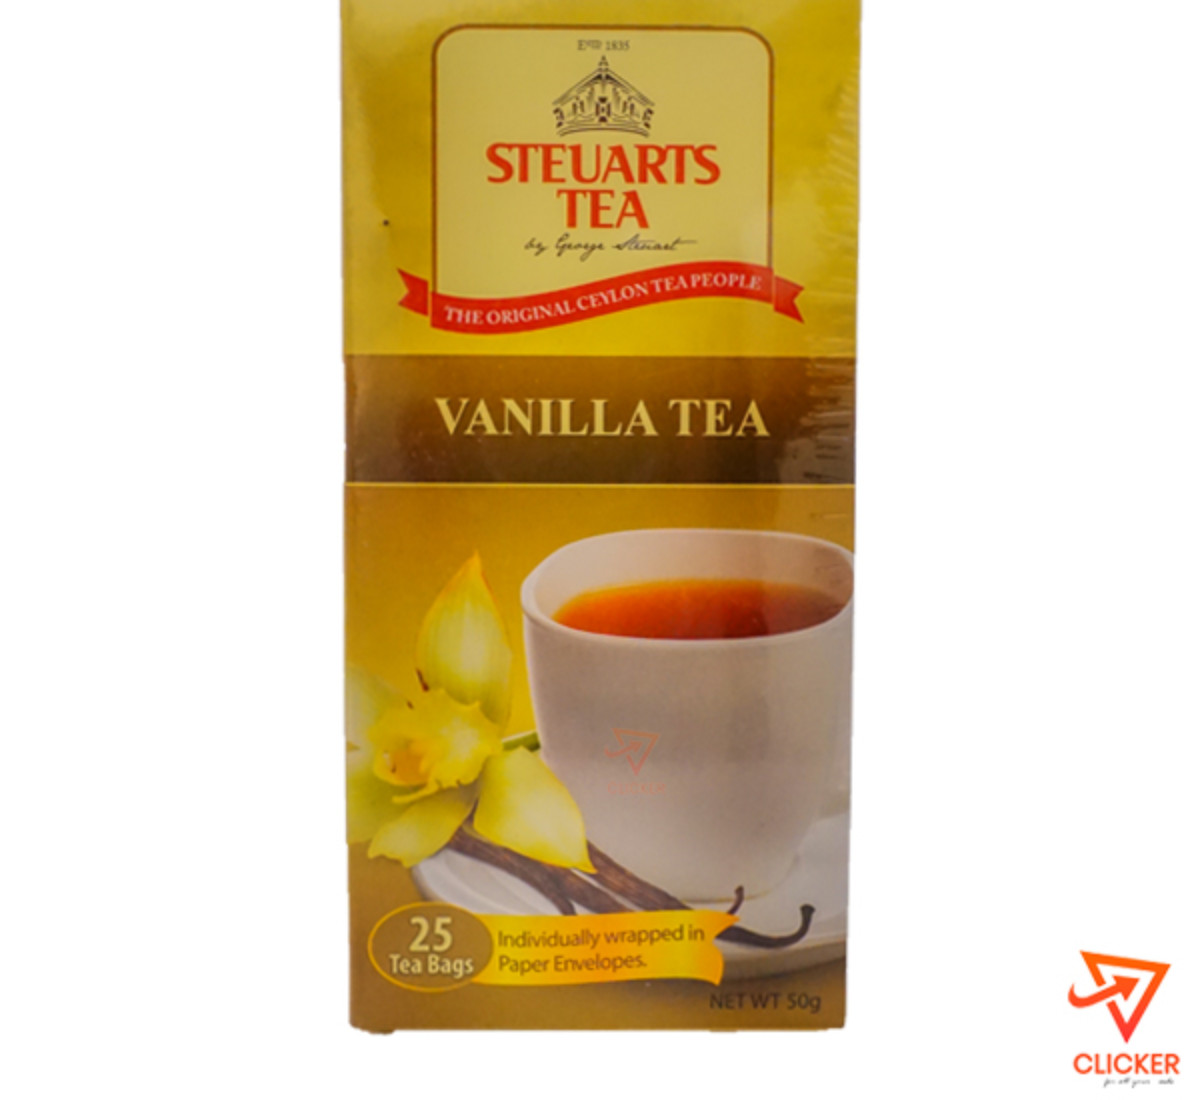 Clicker product 50g GEORGE STEURARTS tea vanilla tea (25 tea bags) 947